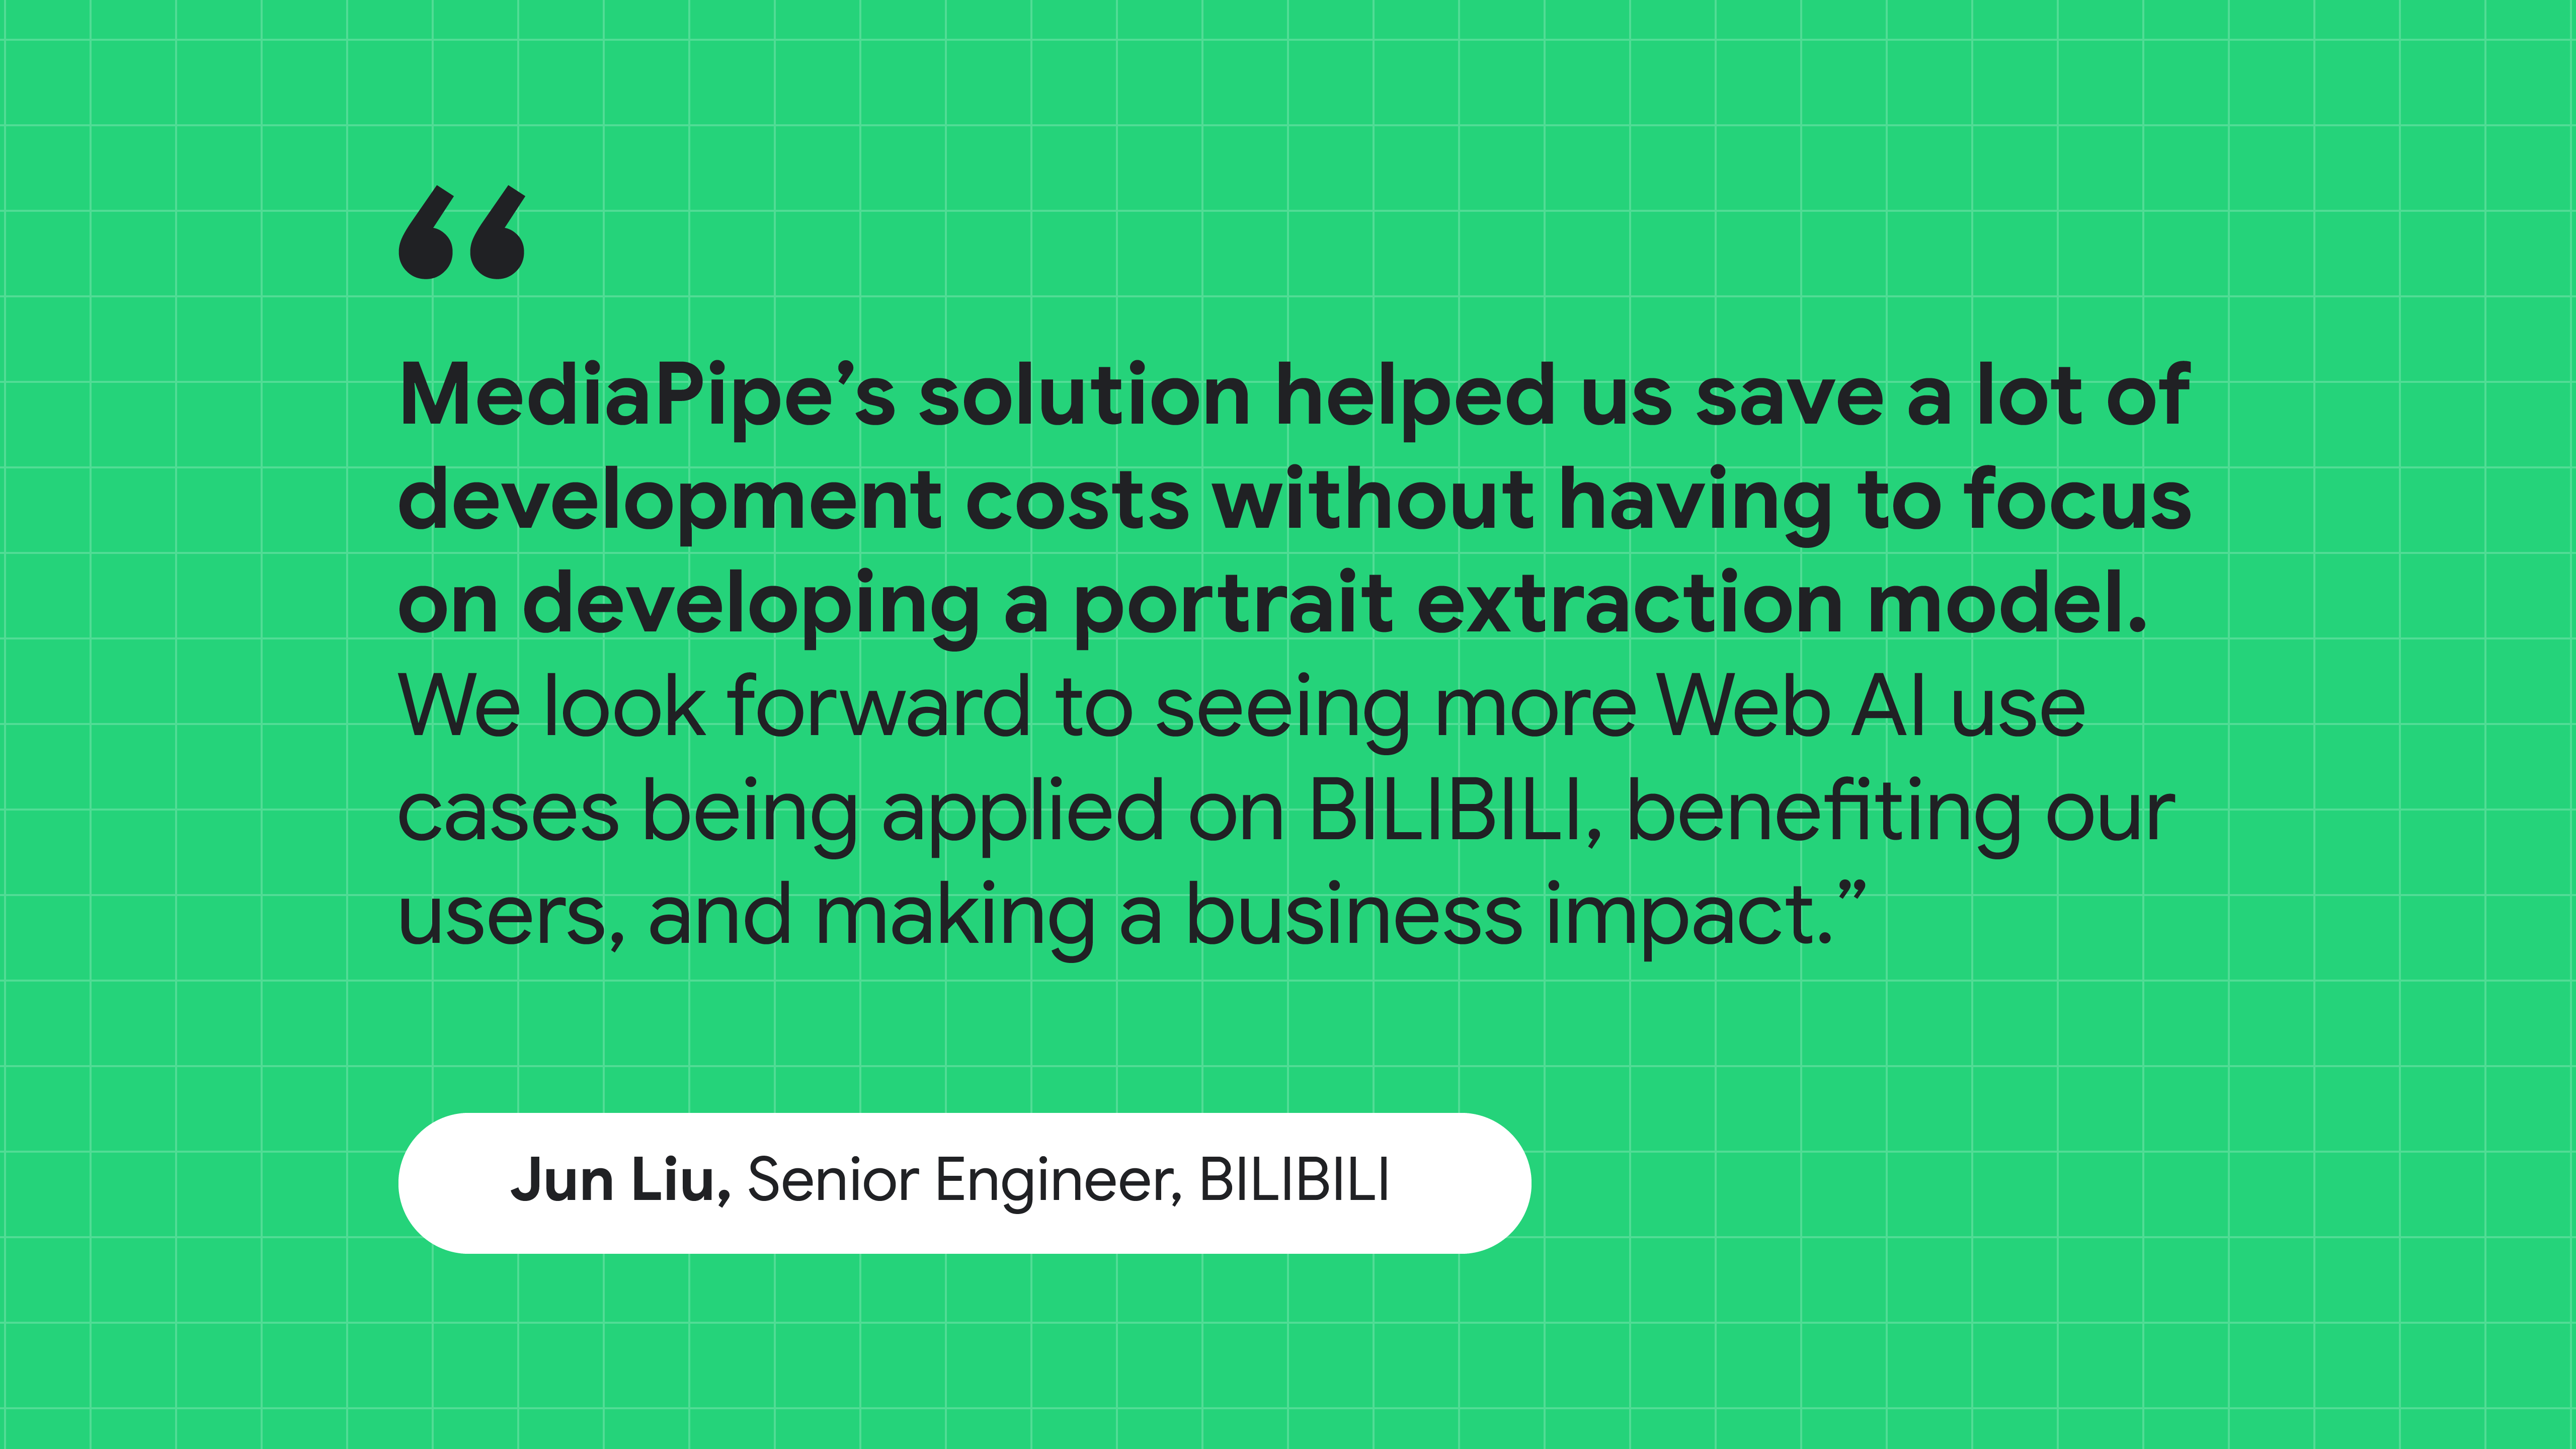 Citazione di Jun Liu, Senior Engineer di BILIBILI: La soluzione di MediaPipe ci ha aiutato a risparmiare sui costi di sviluppo senza concentrarci sulla creazione di un modello di estrazione verticale.